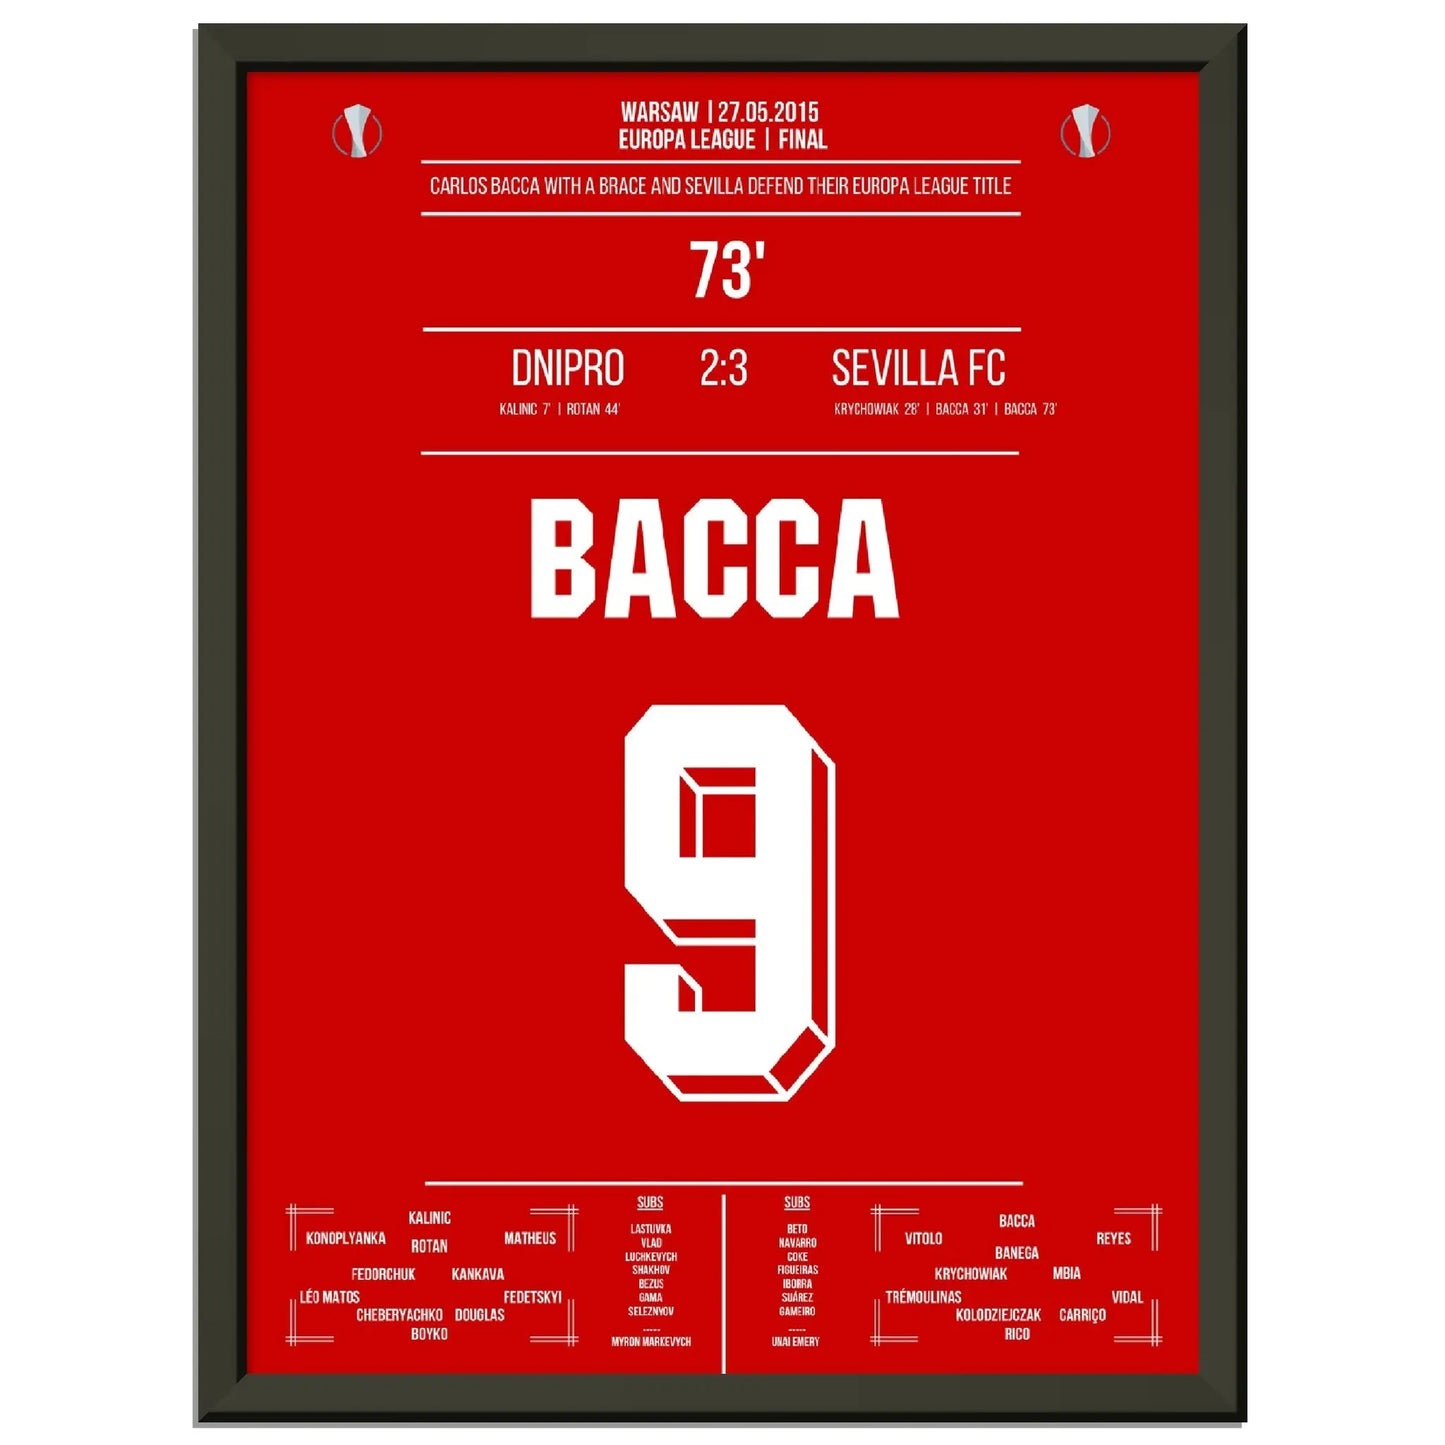 Bacca mit zwei Toren bei Sevilla's Titelverteidigung in der Europa League 2015 